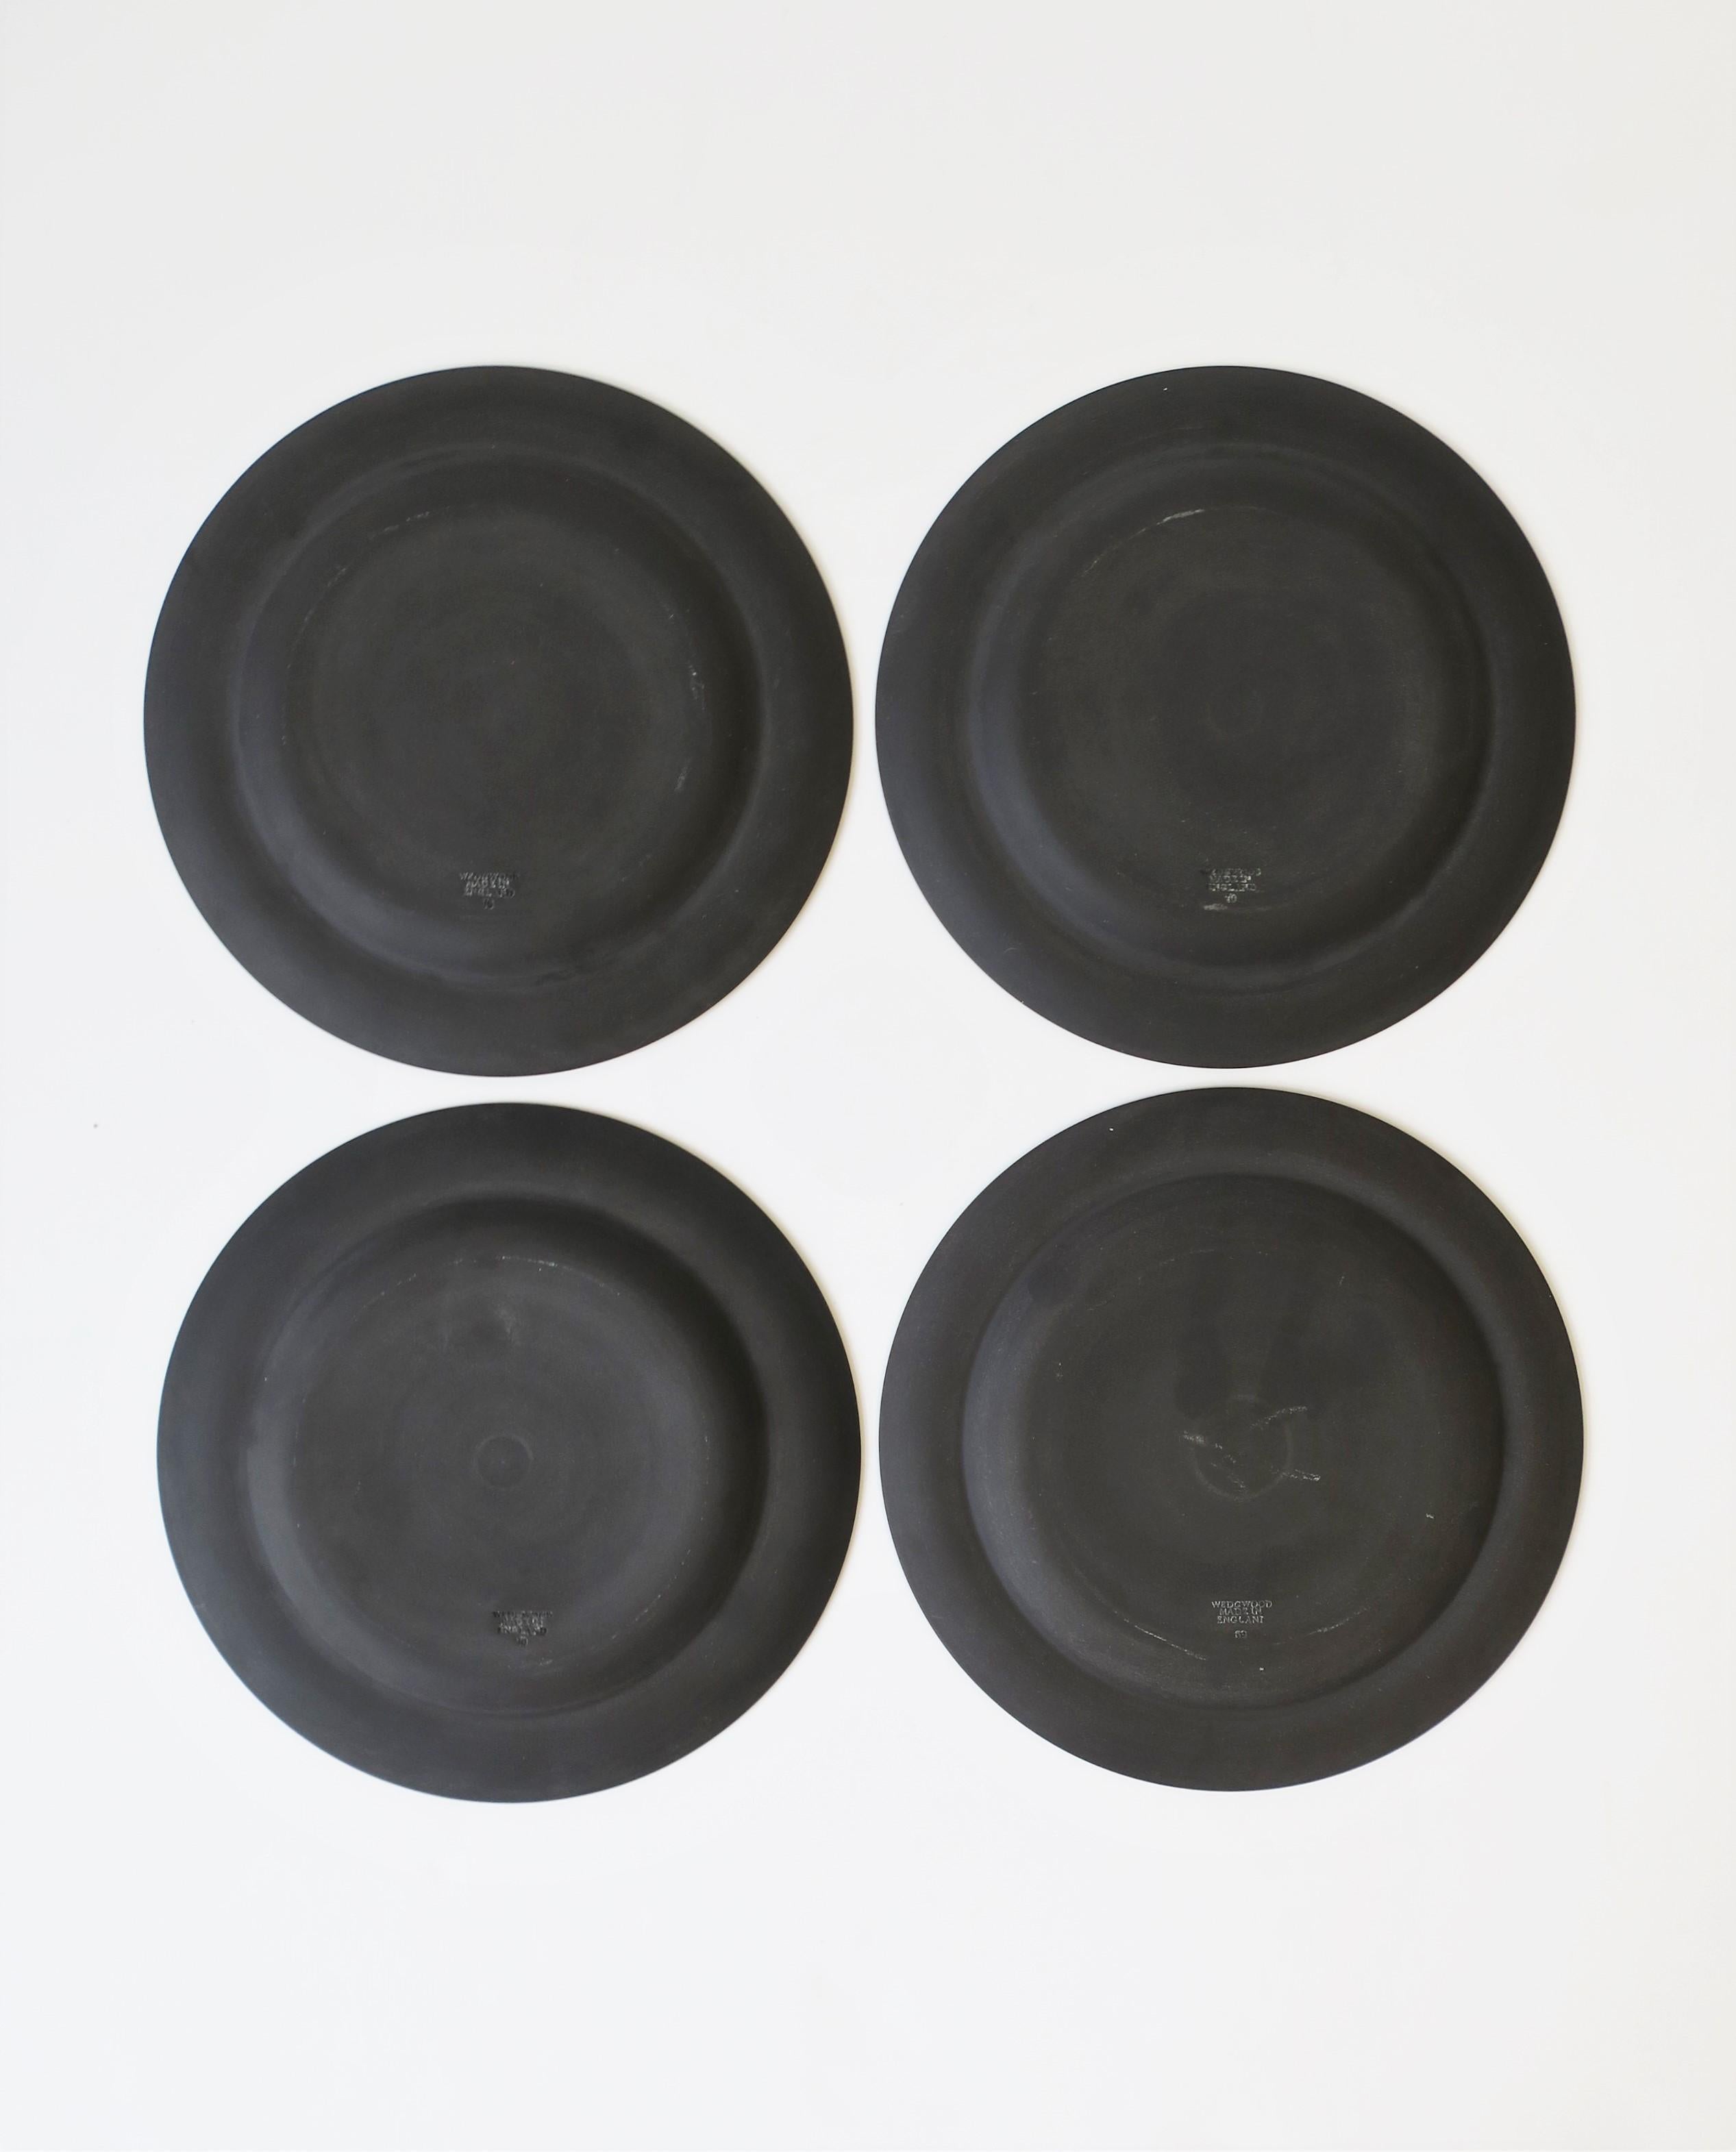 Wedgwood English Matte Black Basalt Plates, Set of 4 1